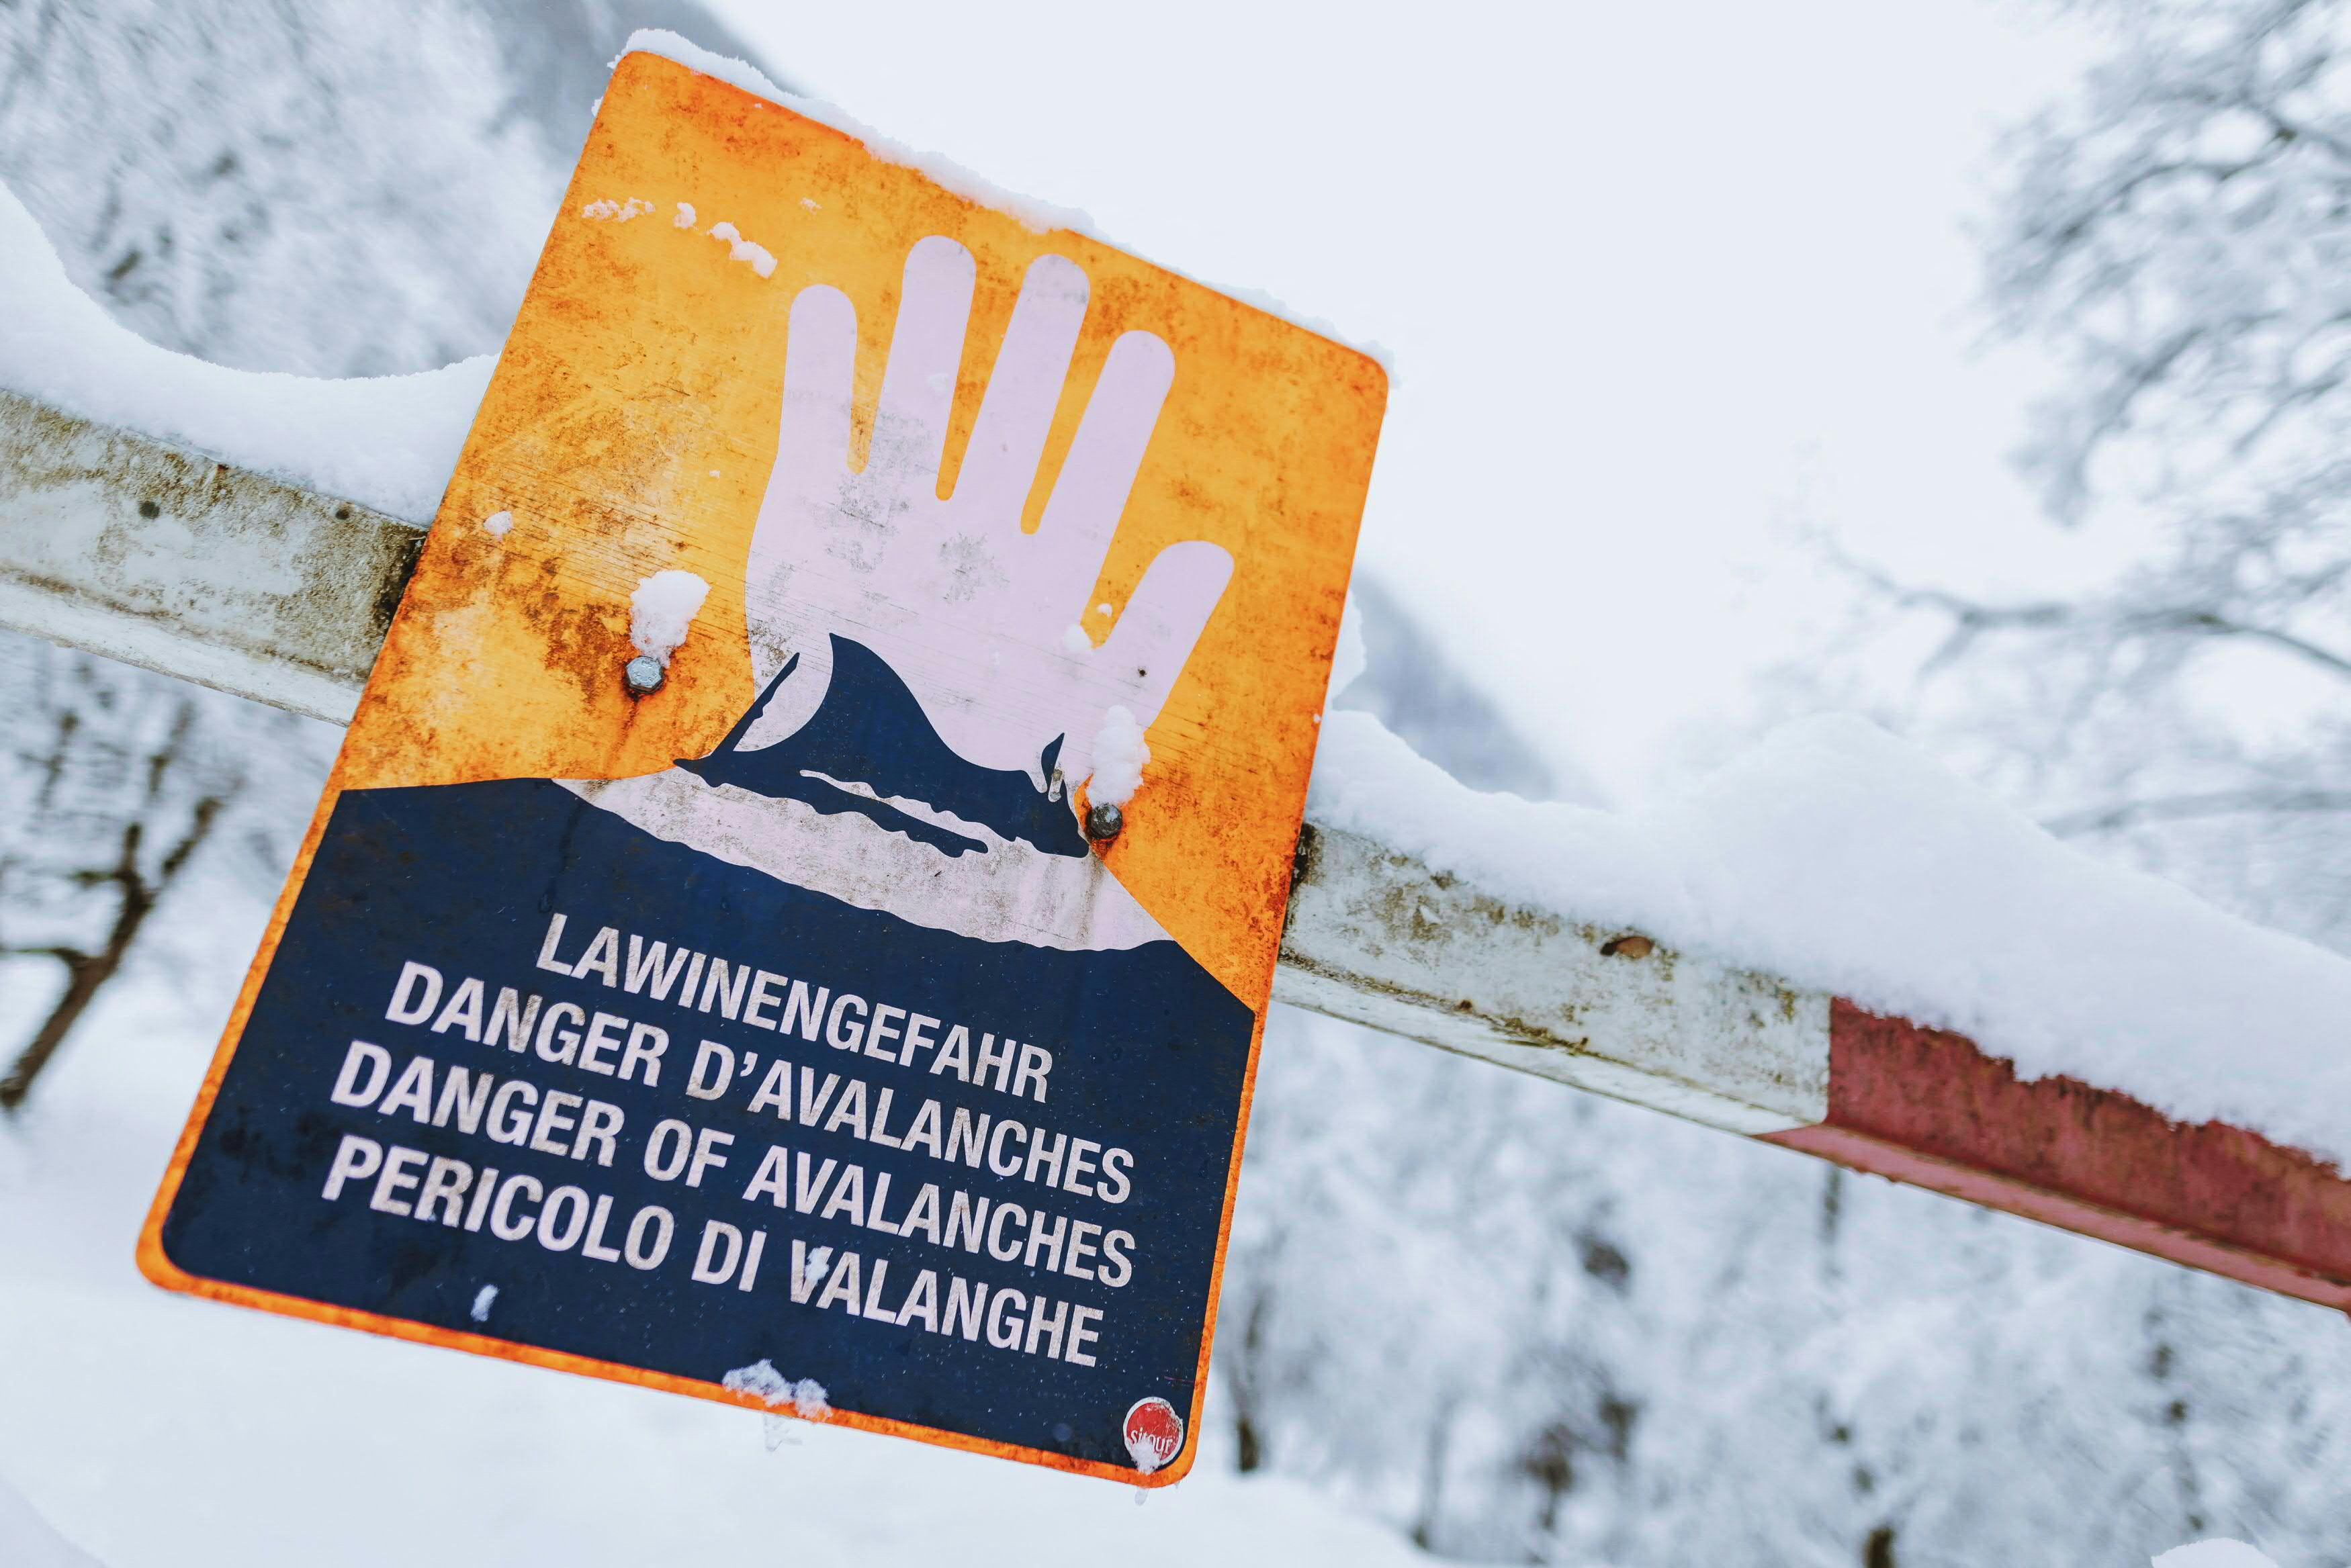 A warning for avalanches in Kaprun, near Salzburg, Austria